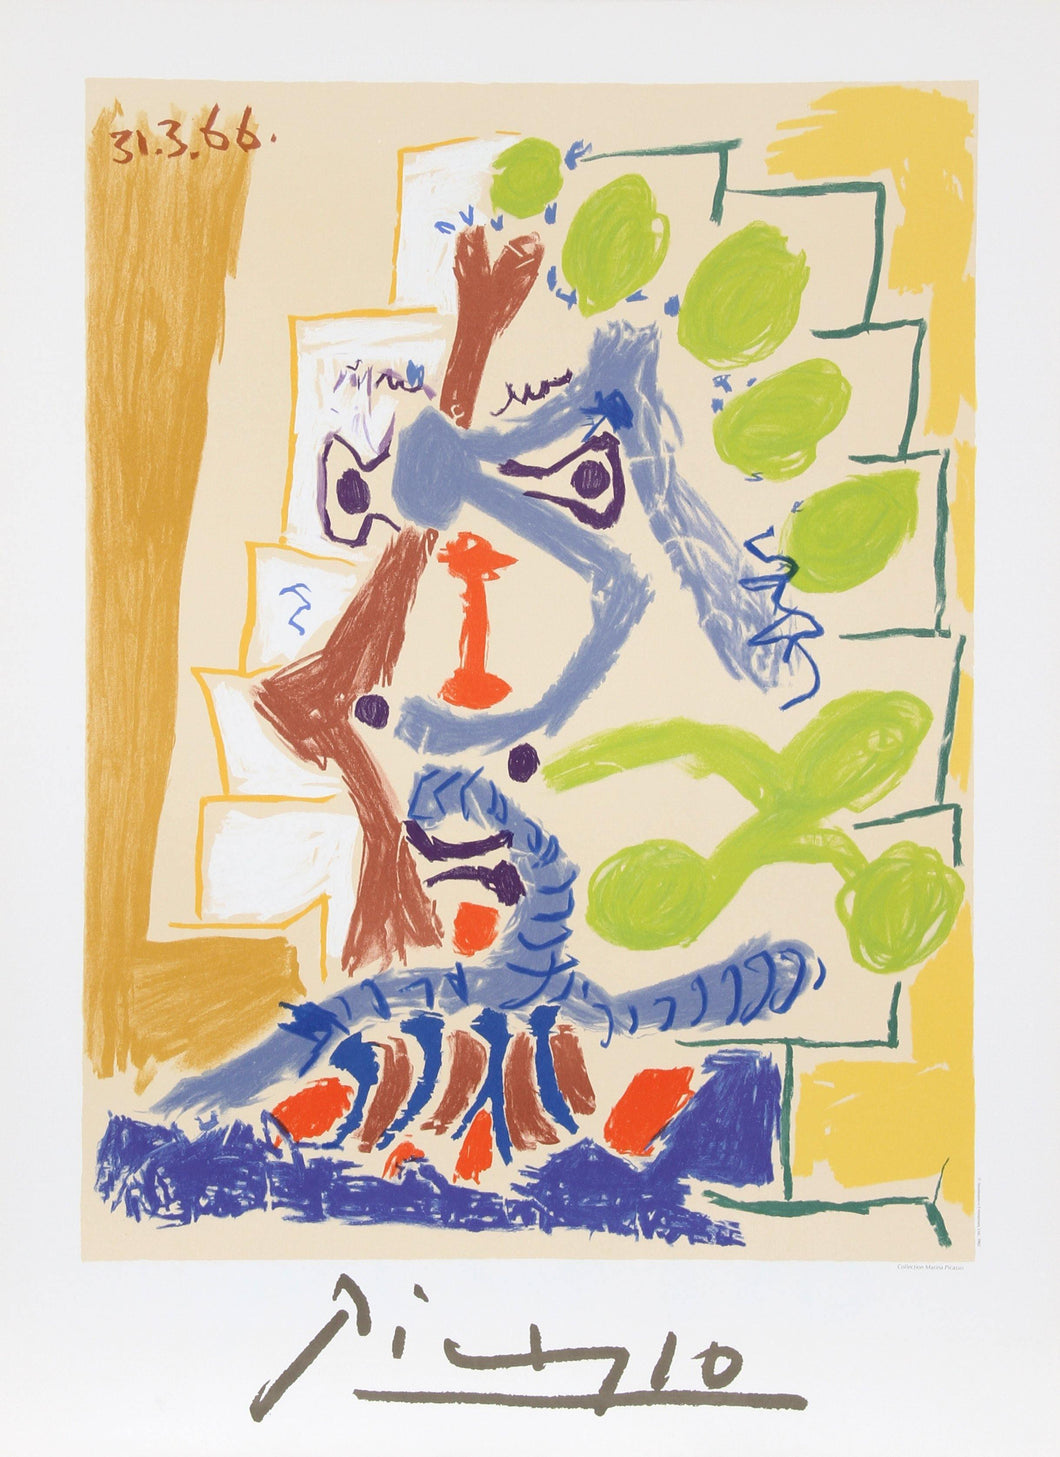 Le Peintre Lithograph | Pablo Picasso,{{product.type}}